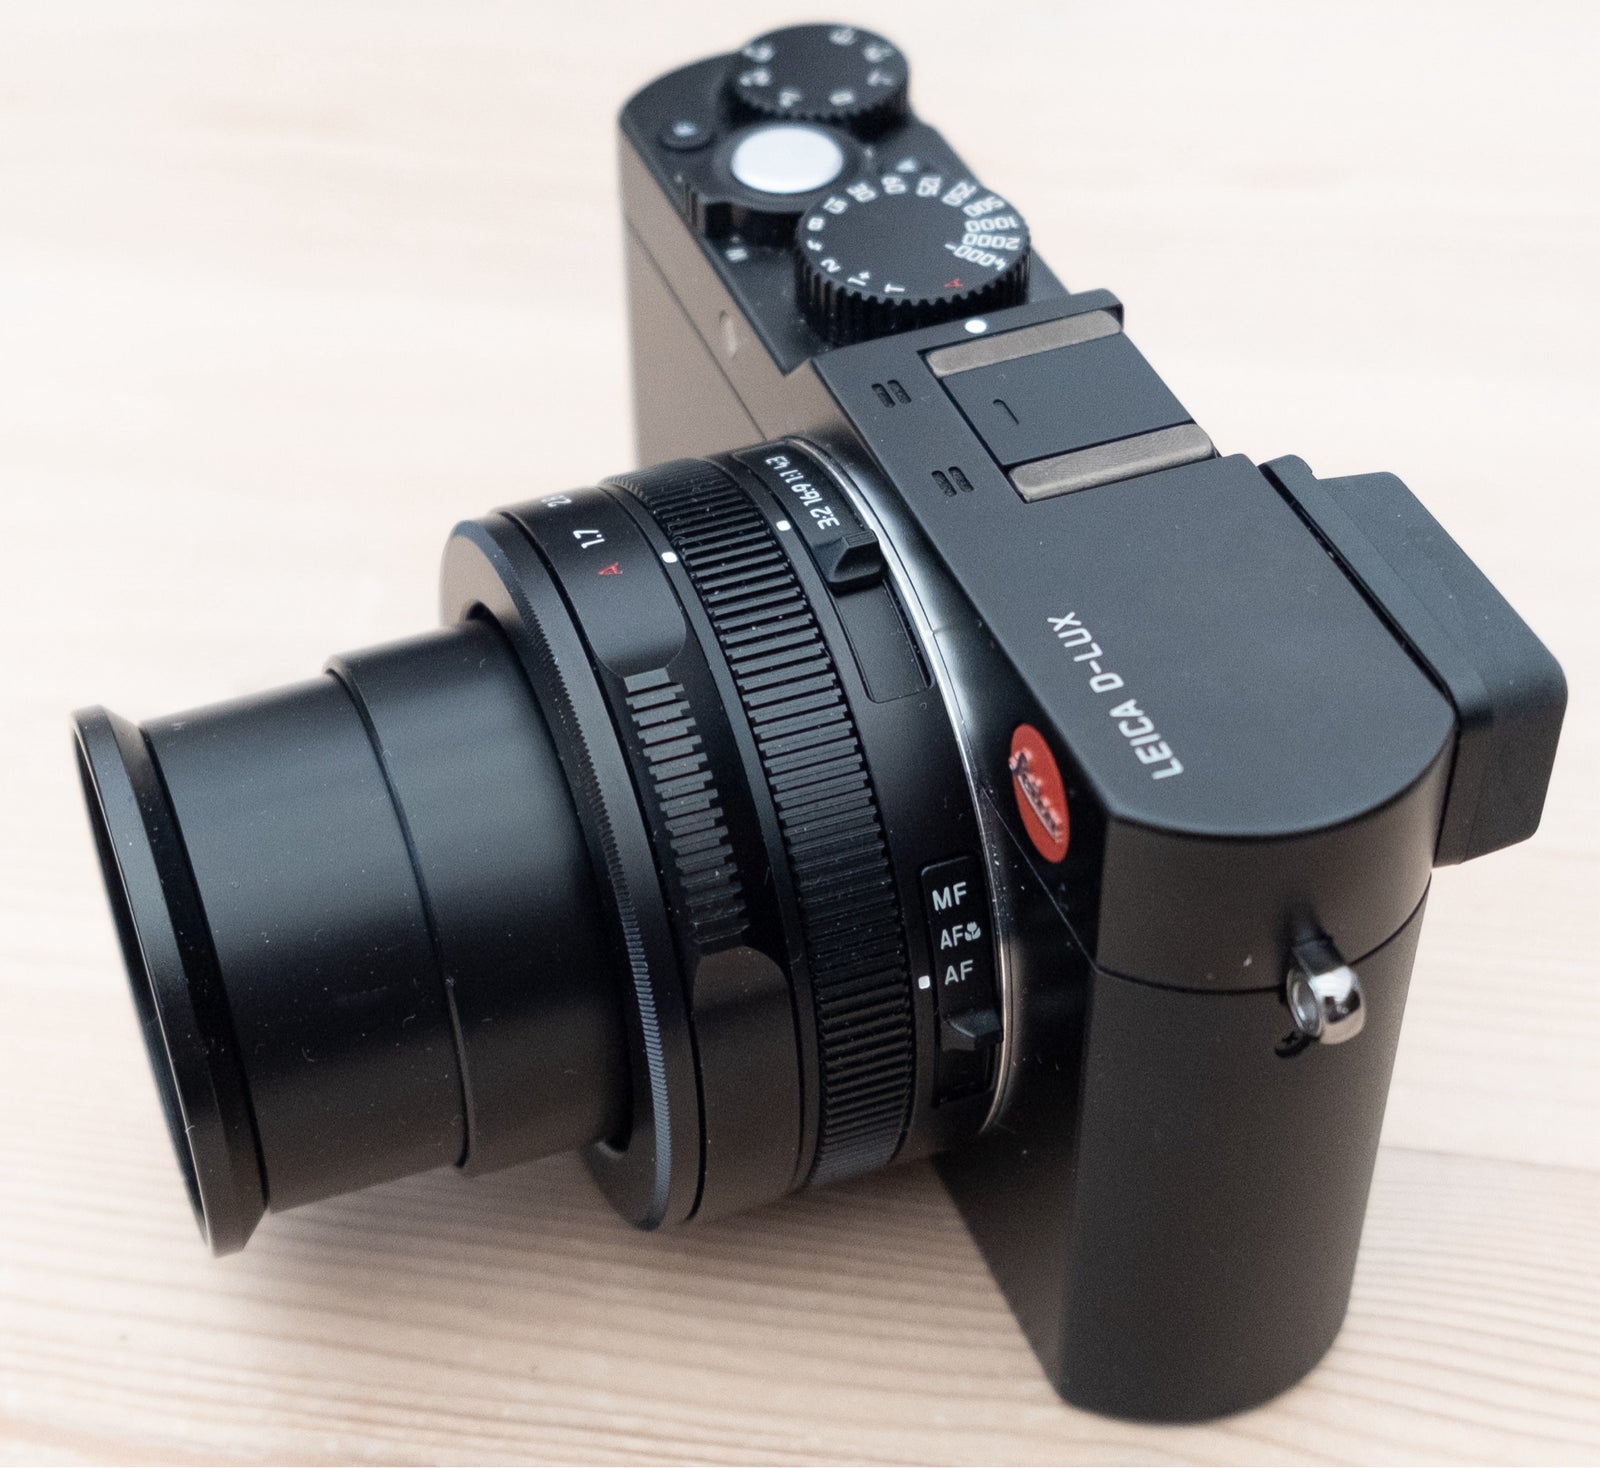 Leica, D-Lux typ 109, 13 megapixels